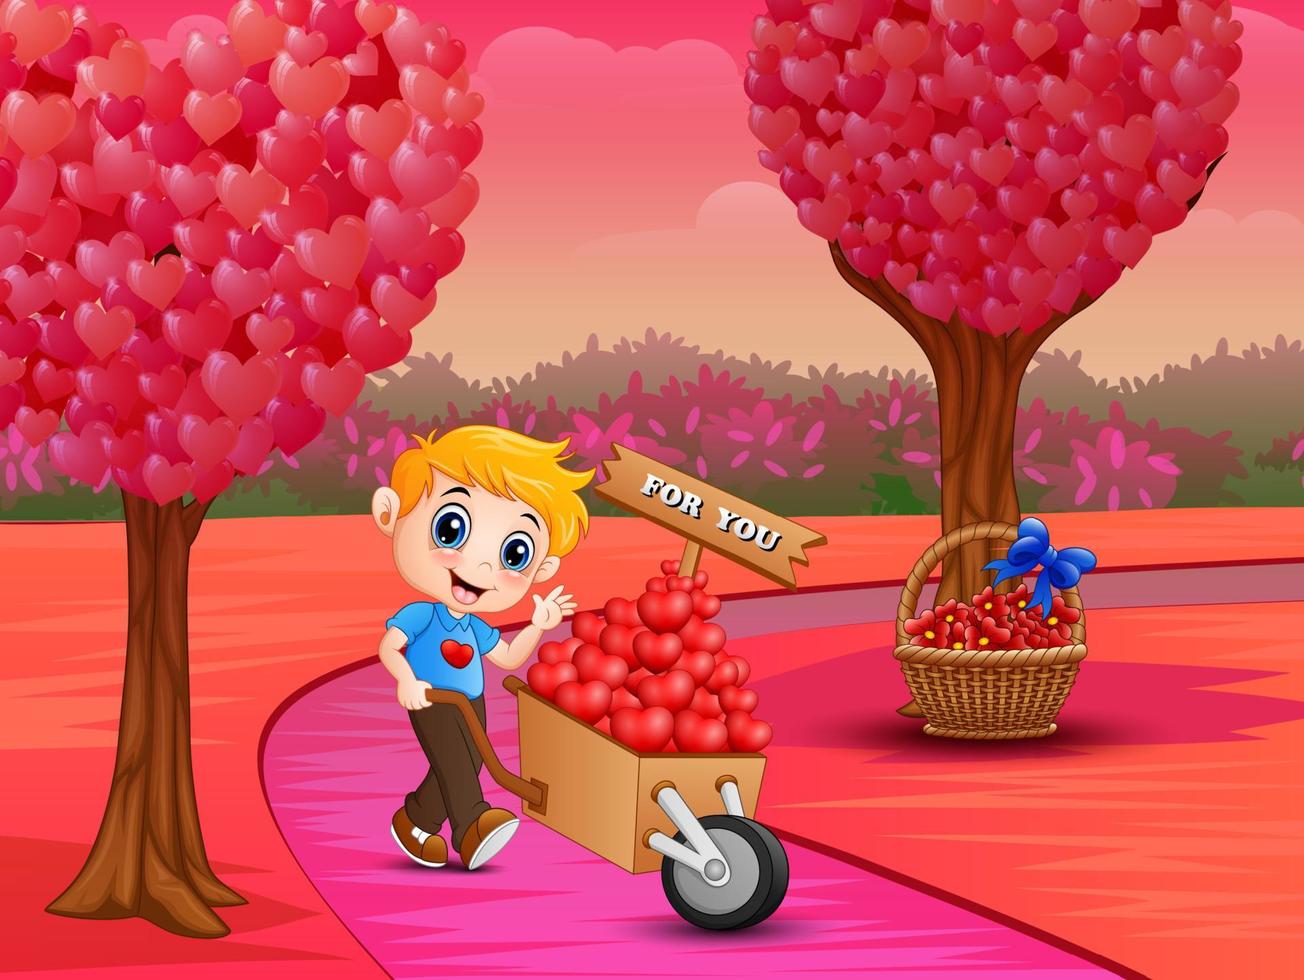 menino empurrando uma pilha de corações no carrinho de madeira em uma estrada rosa vetor